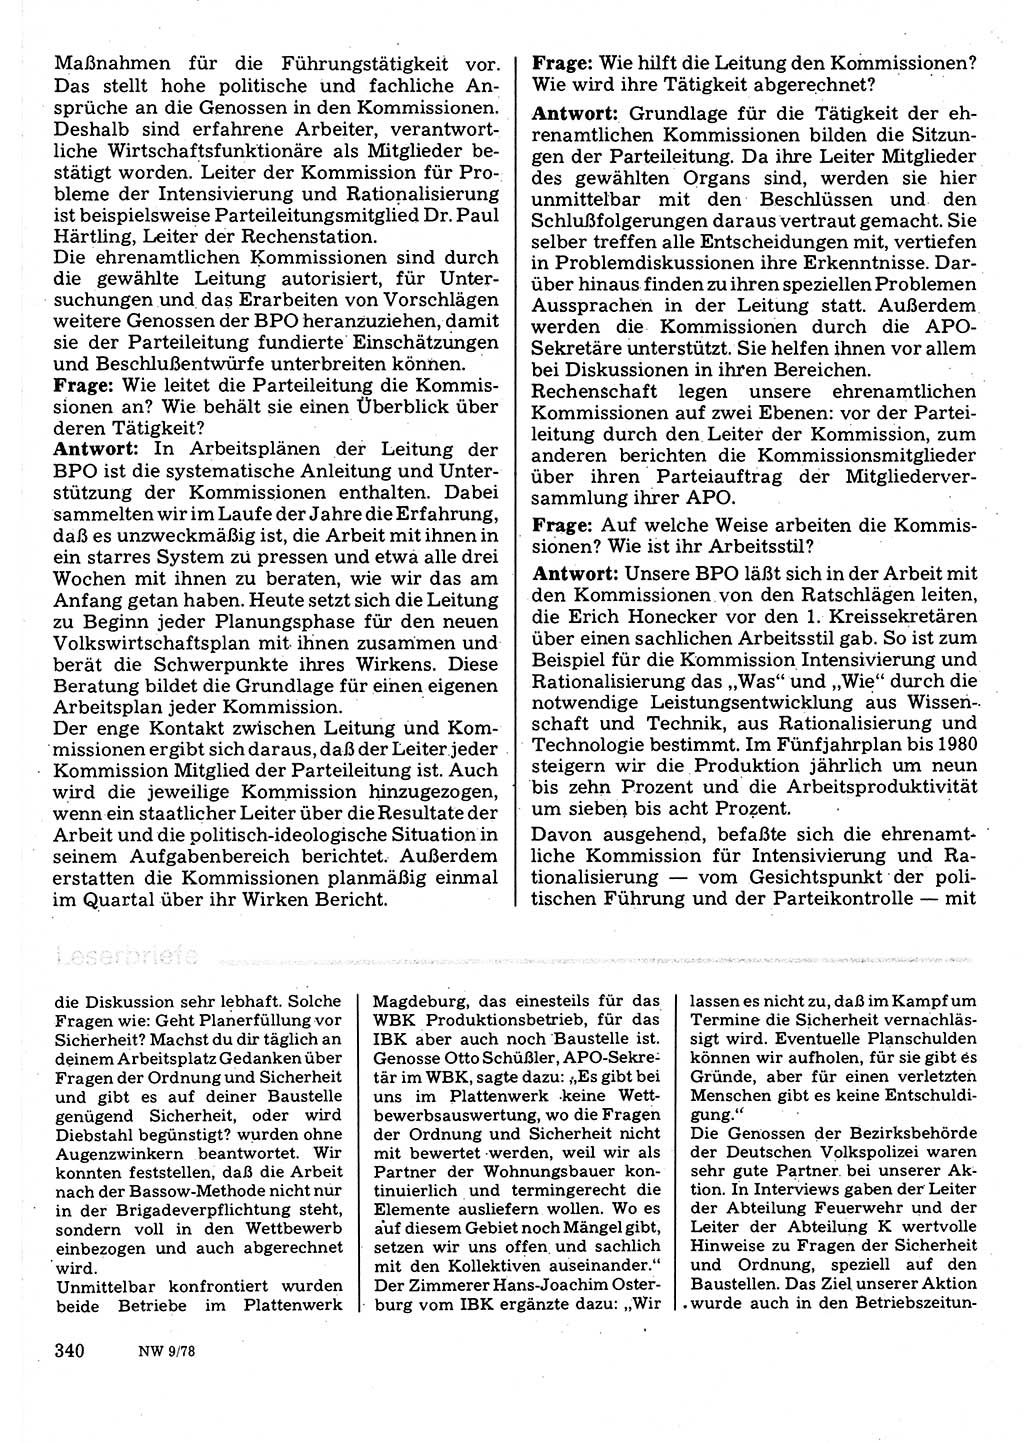 Neuer Weg (NW), Organ des Zentralkomitees (ZK) der SED (Sozialistische Einheitspartei Deutschlands) für Fragen des Parteilebens, 33. Jahrgang [Deutsche Demokratische Republik (DDR)] 1978, Seite 340 (NW ZK SED DDR 1978, S. 340)